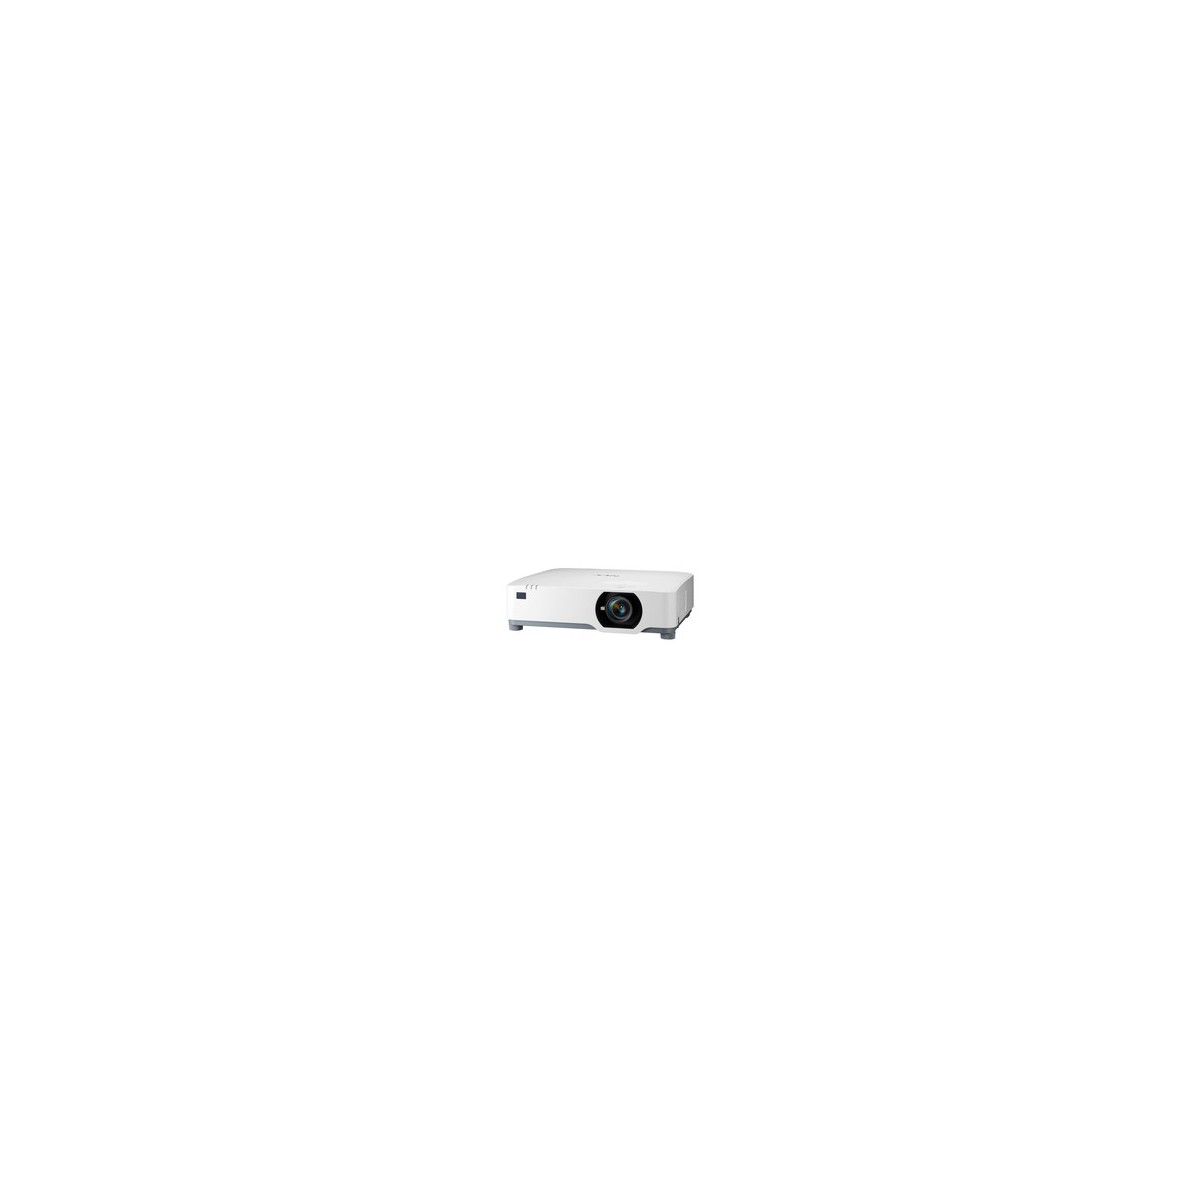 NEC Display PE455UL - 4500 ANSI lumens - 3LCD - WUXGA (1920x1200) - 500000:1 - 16:10 - 762 - 7620 mm (30 - 300)